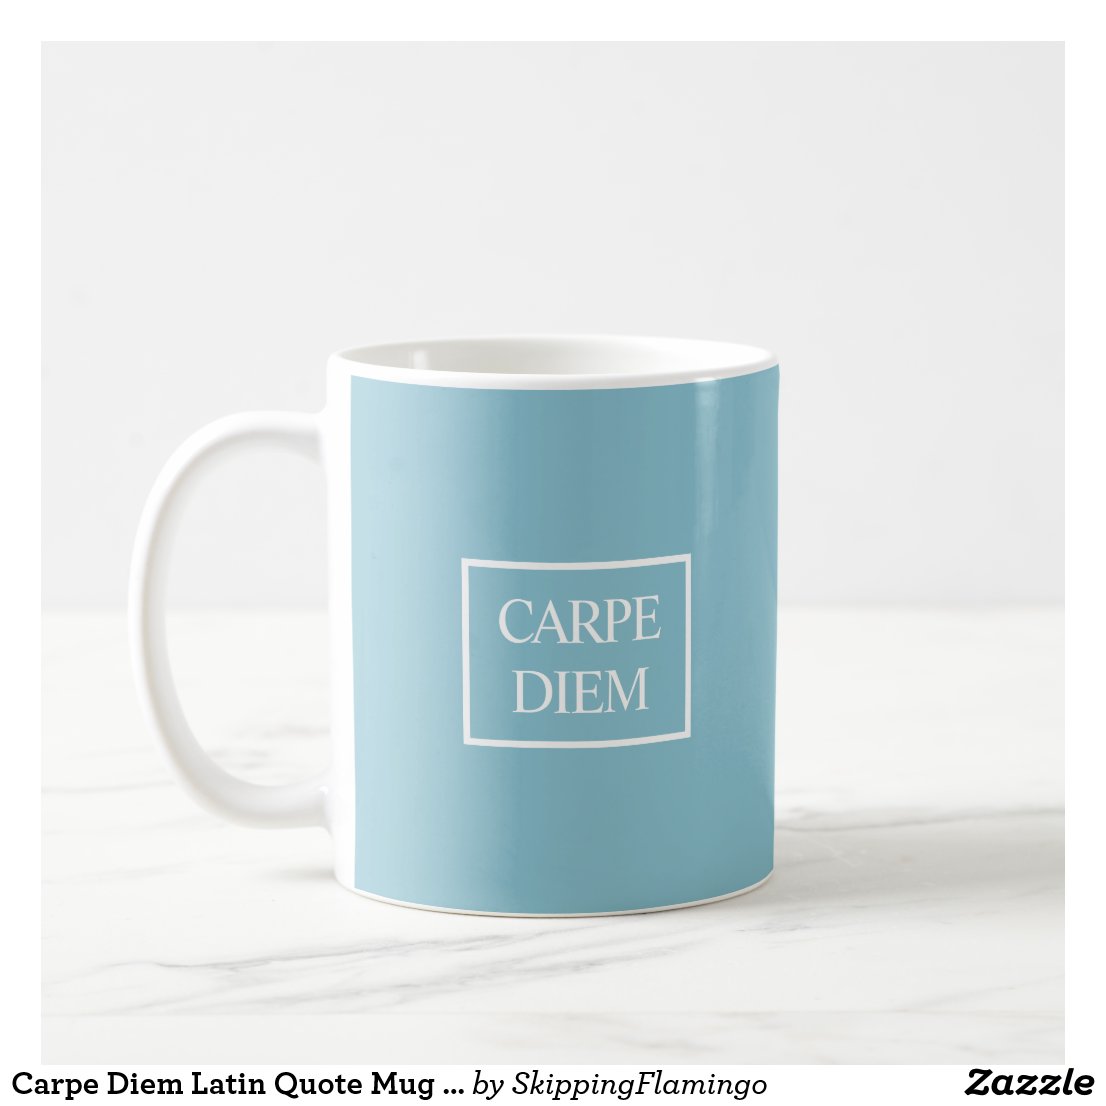 Carpe Diem Latin Quote Mug - Turquoise